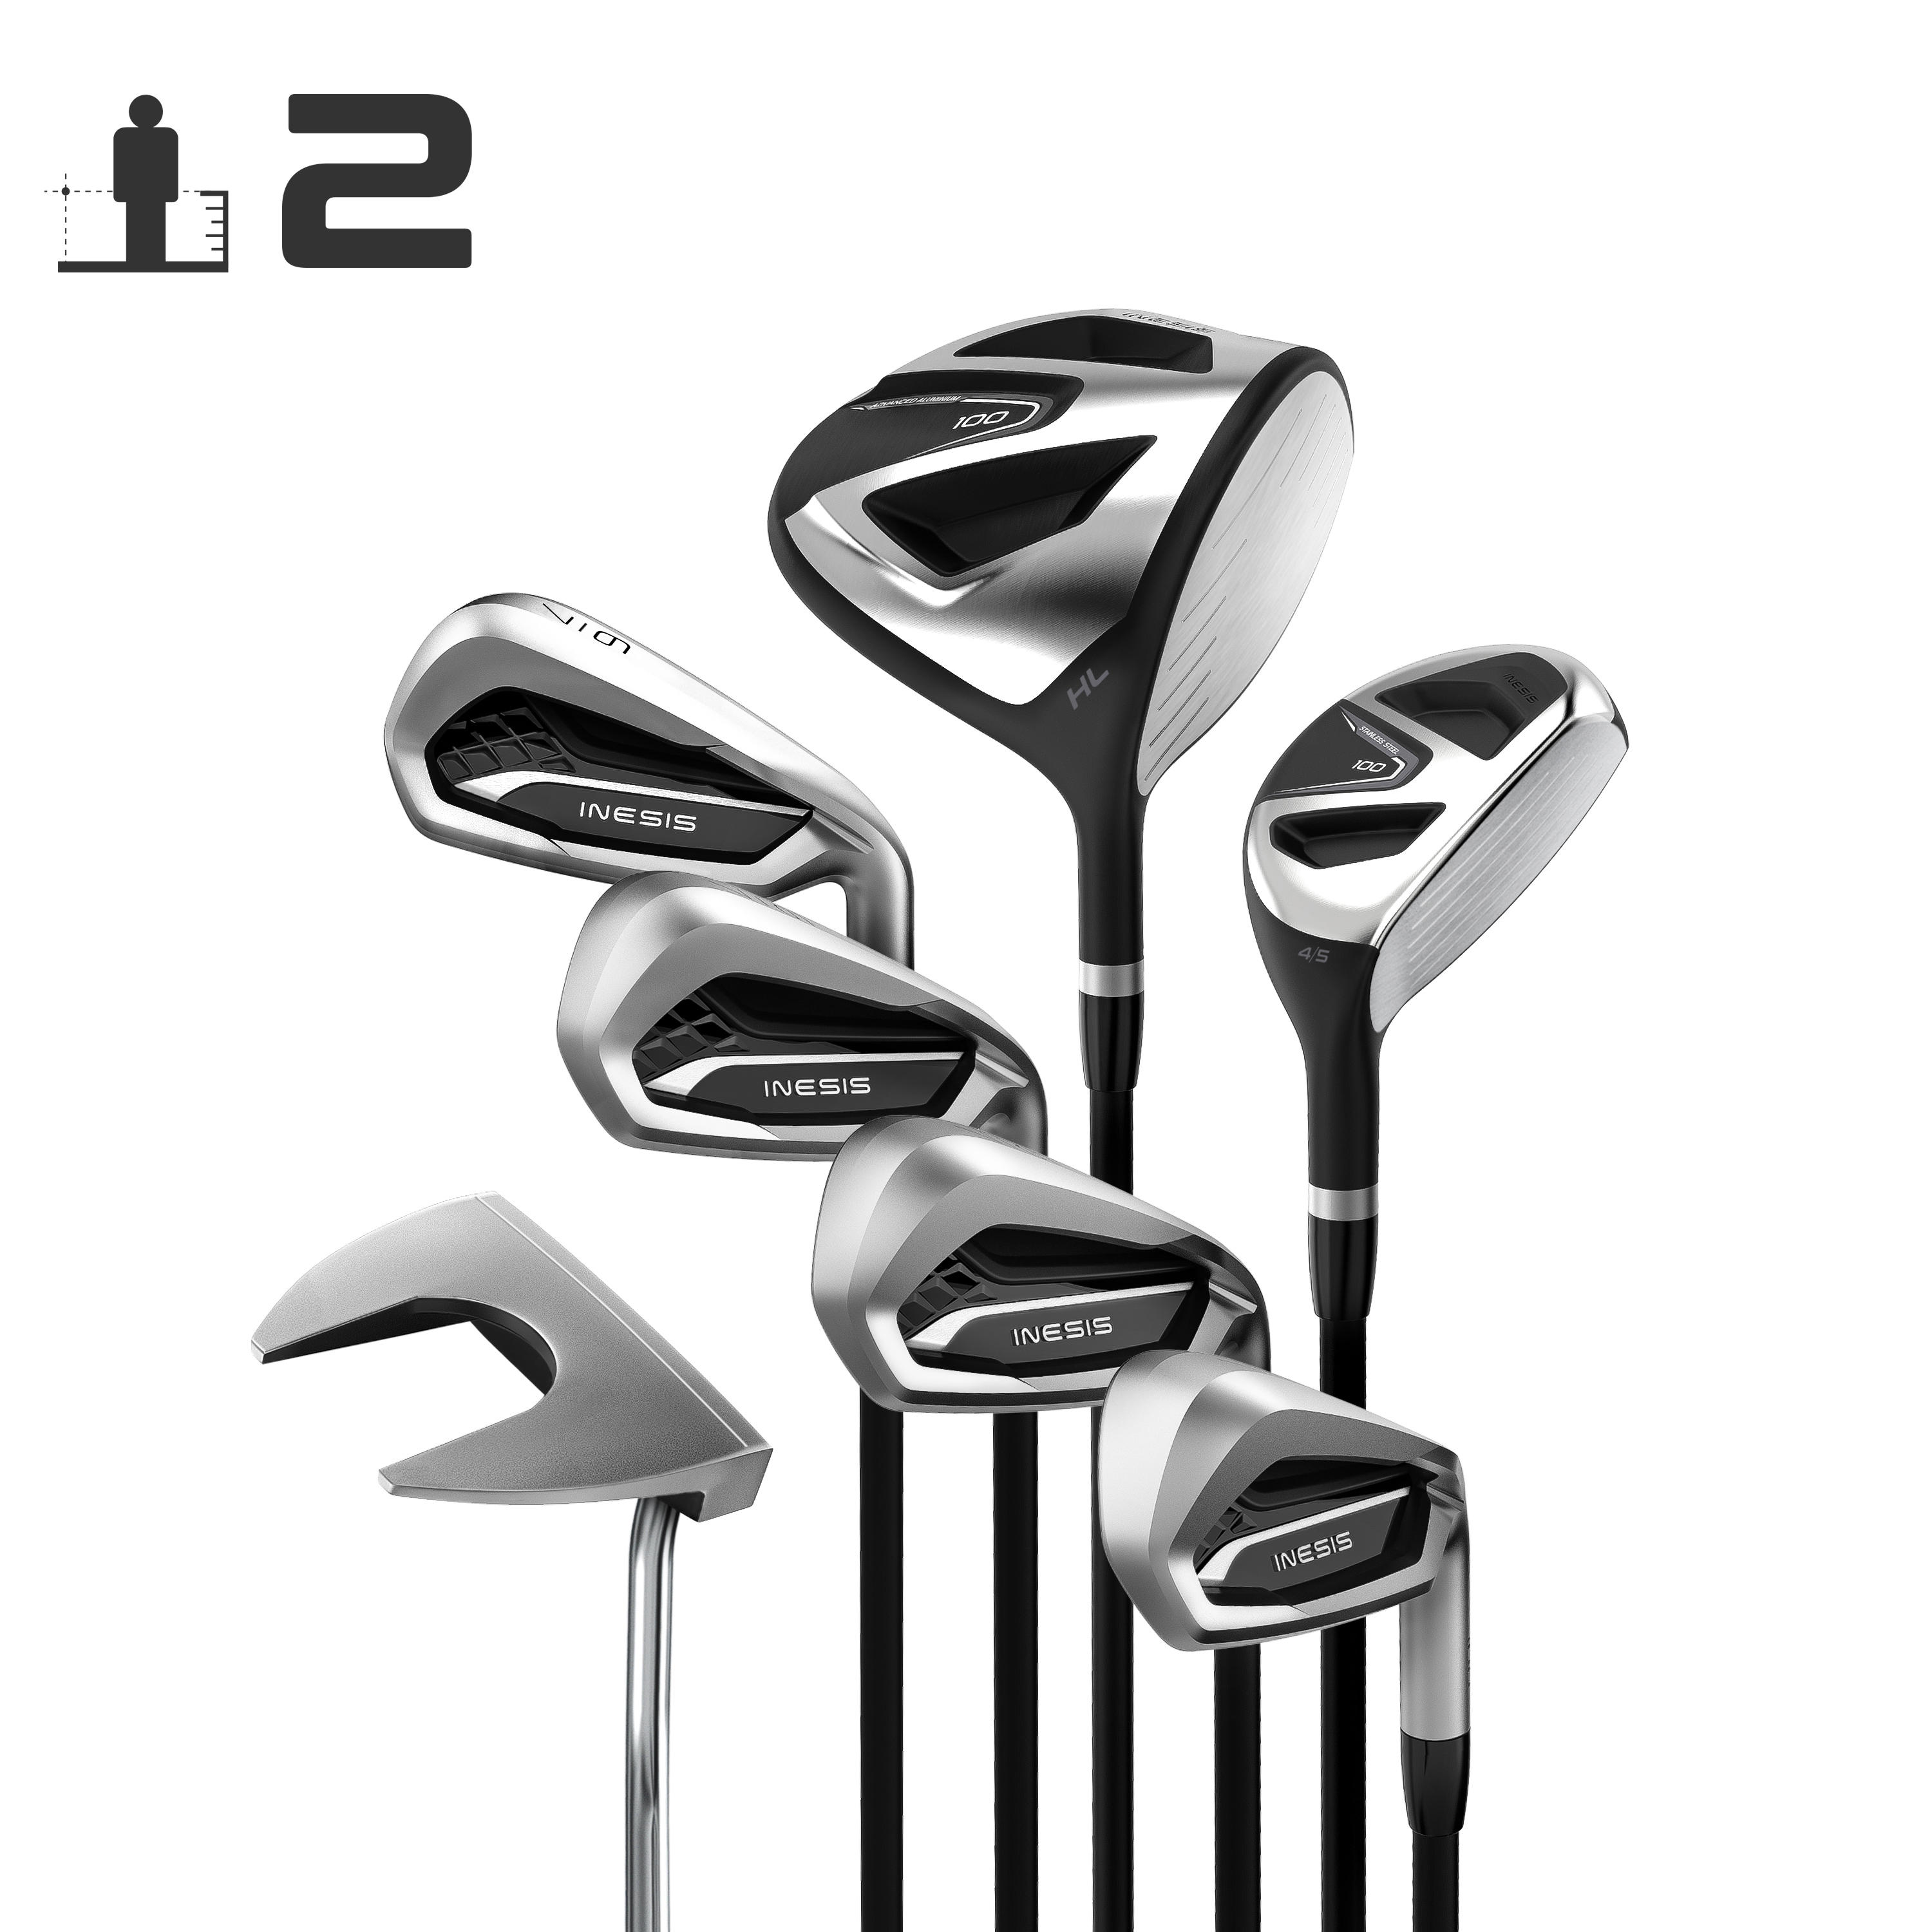 [ส่งฟรี ] ไม้กอล์ฟครบชุด 7 ไม้ ชุดไม้กอล์ฟก้านแกรไฟต์ 7 ไม้สำหรับผู้ใหญ่ถนัดขวารุ่น 100 (เบอร์ 2) GOLF CLUBS SET ADULT GOLF KIT 7 CLUBS 100 REGULAR SIZE 2 - GRAPHITE Golf clubs set MEN WOMEN Golf club set ไม้กอล์ฟครบชุด ของแท้